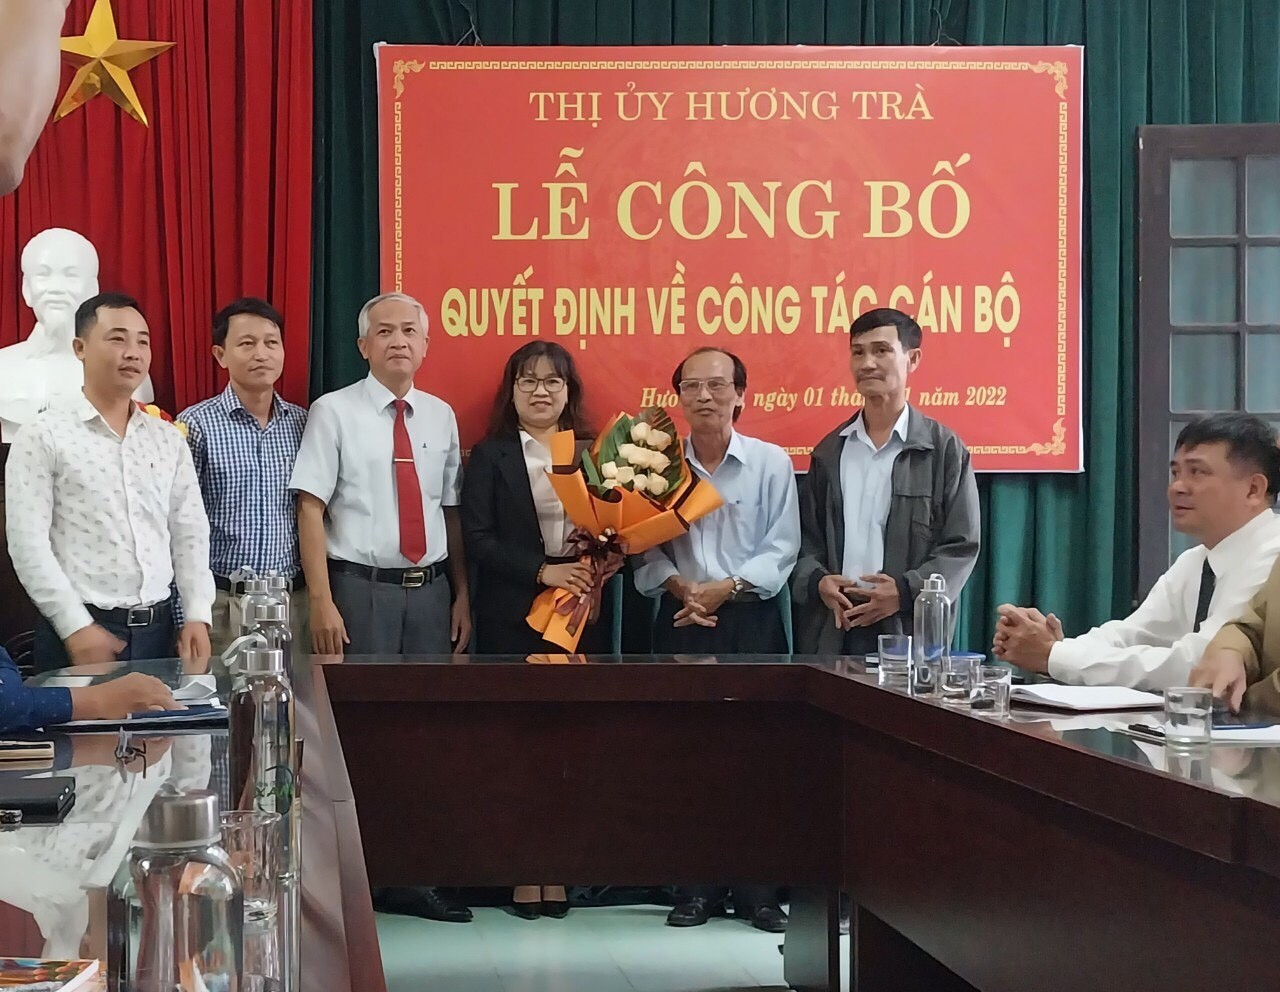 Thị ủy Hương Trà công bố Quyết định bổ nhiệm, chỉ định cán bộ